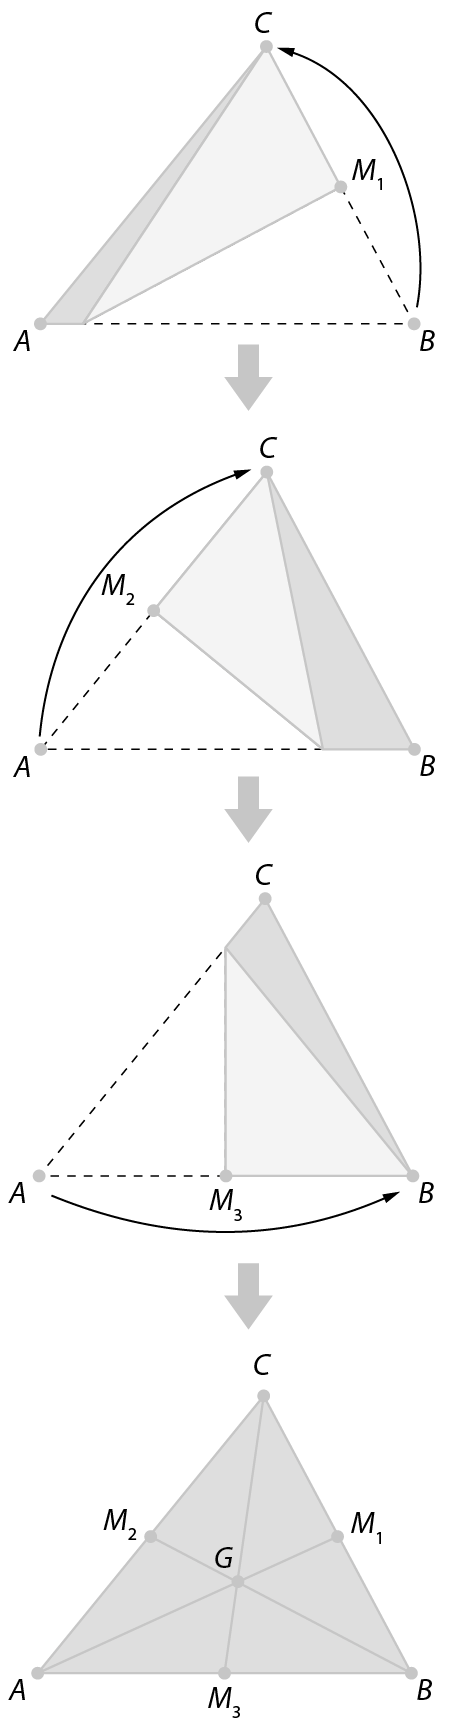 Figura geométrica.
Sequencia de imagens.
Imagem 1.  Triângulo ABC com o lado BC dobrado ao meio de modo que o vértice B coincida com o vértice C, definindo o ponto M1 em BC. 
Imagem 2.  Triângulo ABC com o lado AC dobrado ao meio de modo que o vértice A coincida com o vértice C, definindo o ponto M2 em AC. Imagem 3.  Triângulo ABC com o lado AB dobrado ao meio de modo que o vértice A coincida com o vértice B, definindo o ponto M3 em AB. Imagem 4.  Triângulo ABC com indicação dos pontos M1, M2 e M3 definidos nas imagens anteriores. E do ponto G que é a intersecção dos segmentos AM1, BM2 e CM3.